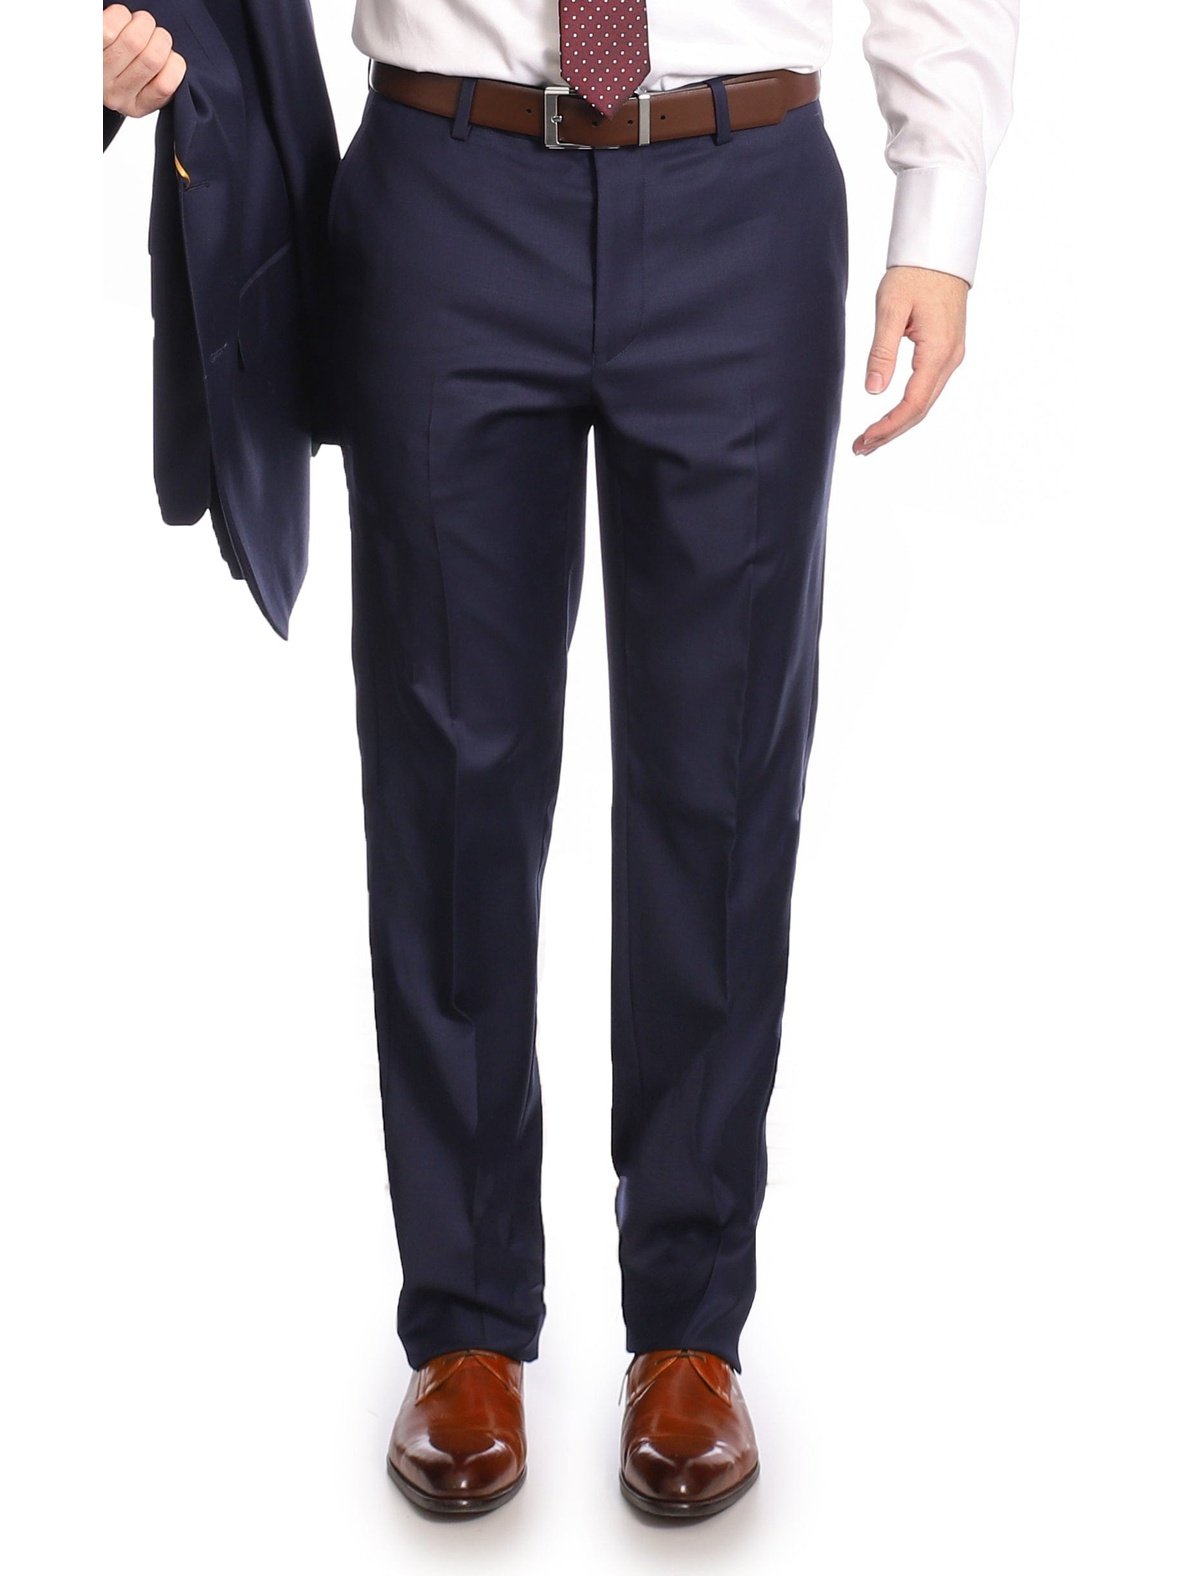 Men Summer Office Formal Pants Business Dress Work Trousers High Waist  Plain | eBay